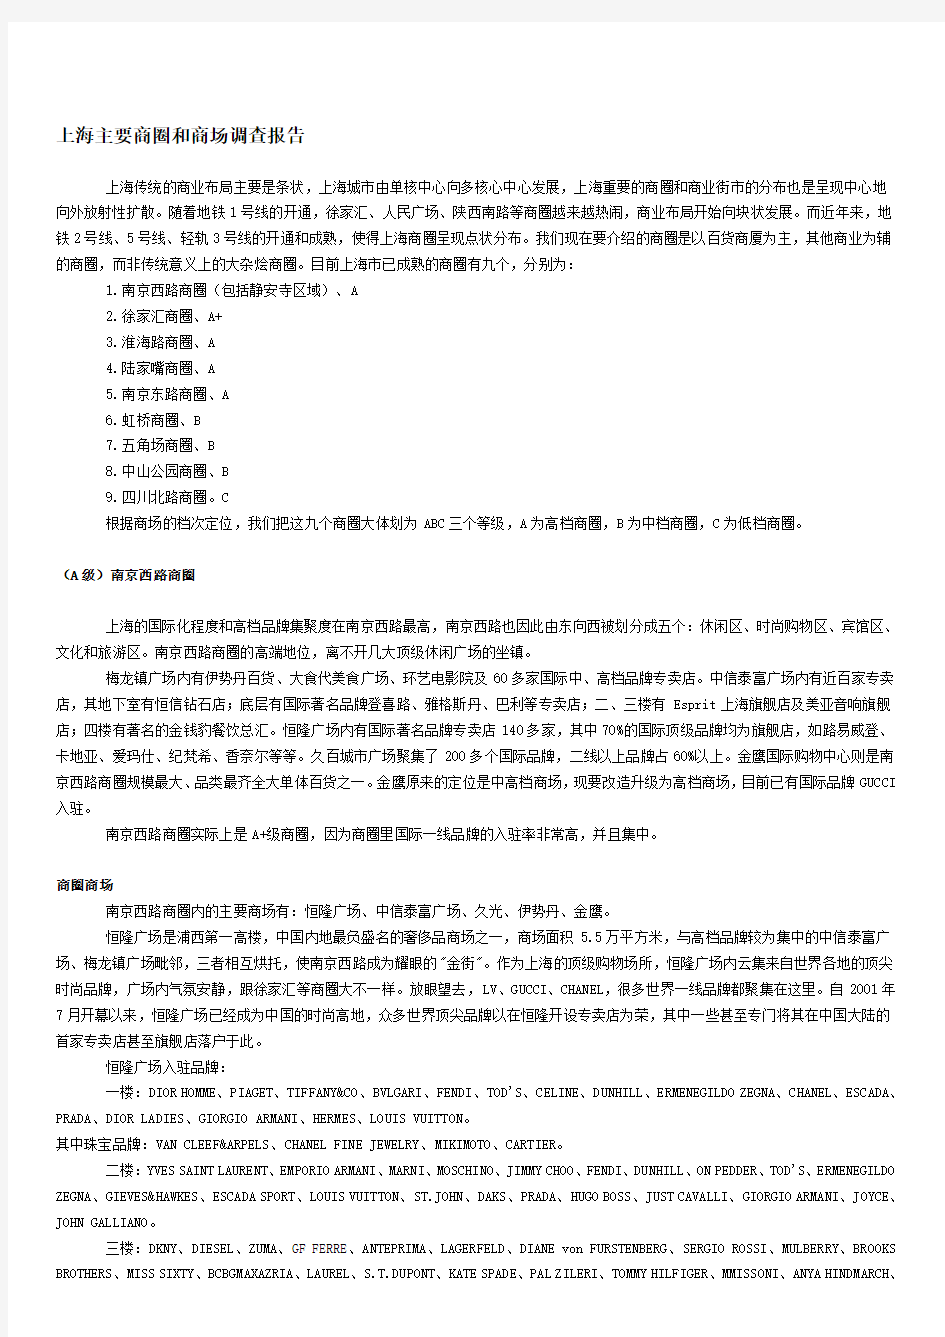 上海主要商圈和商场调查分析报告资料